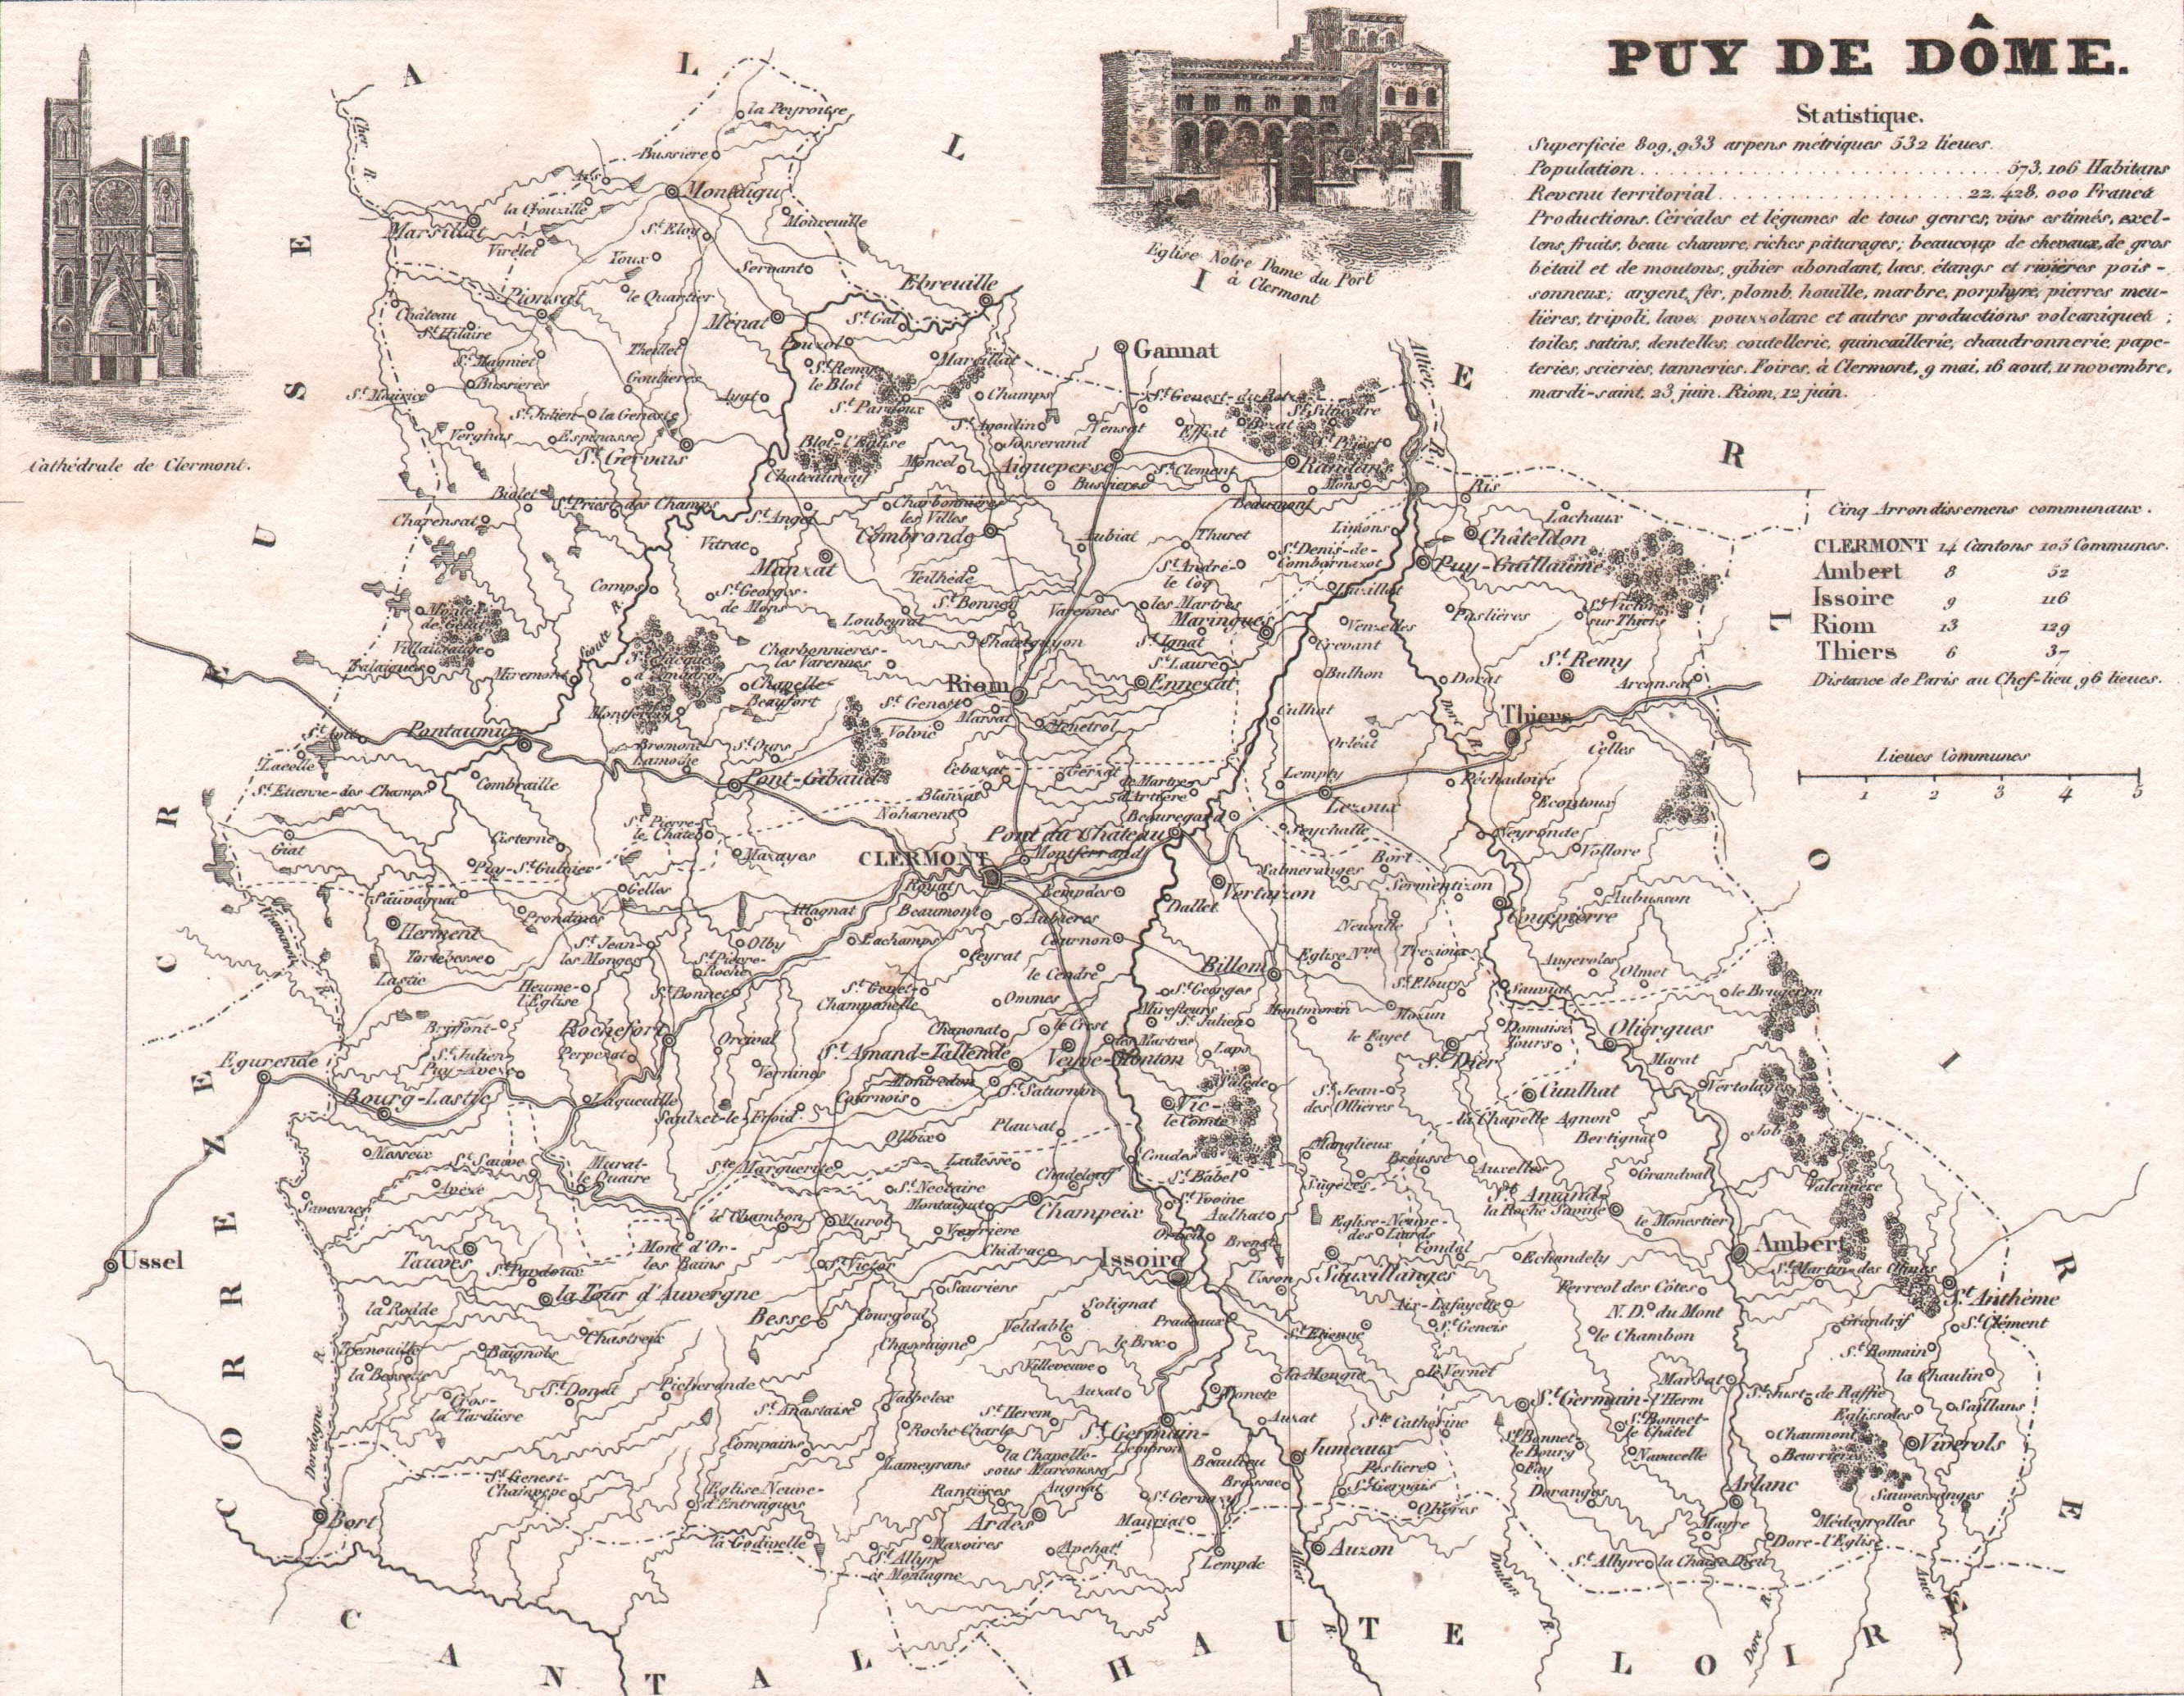 63 - Puy de Dôme